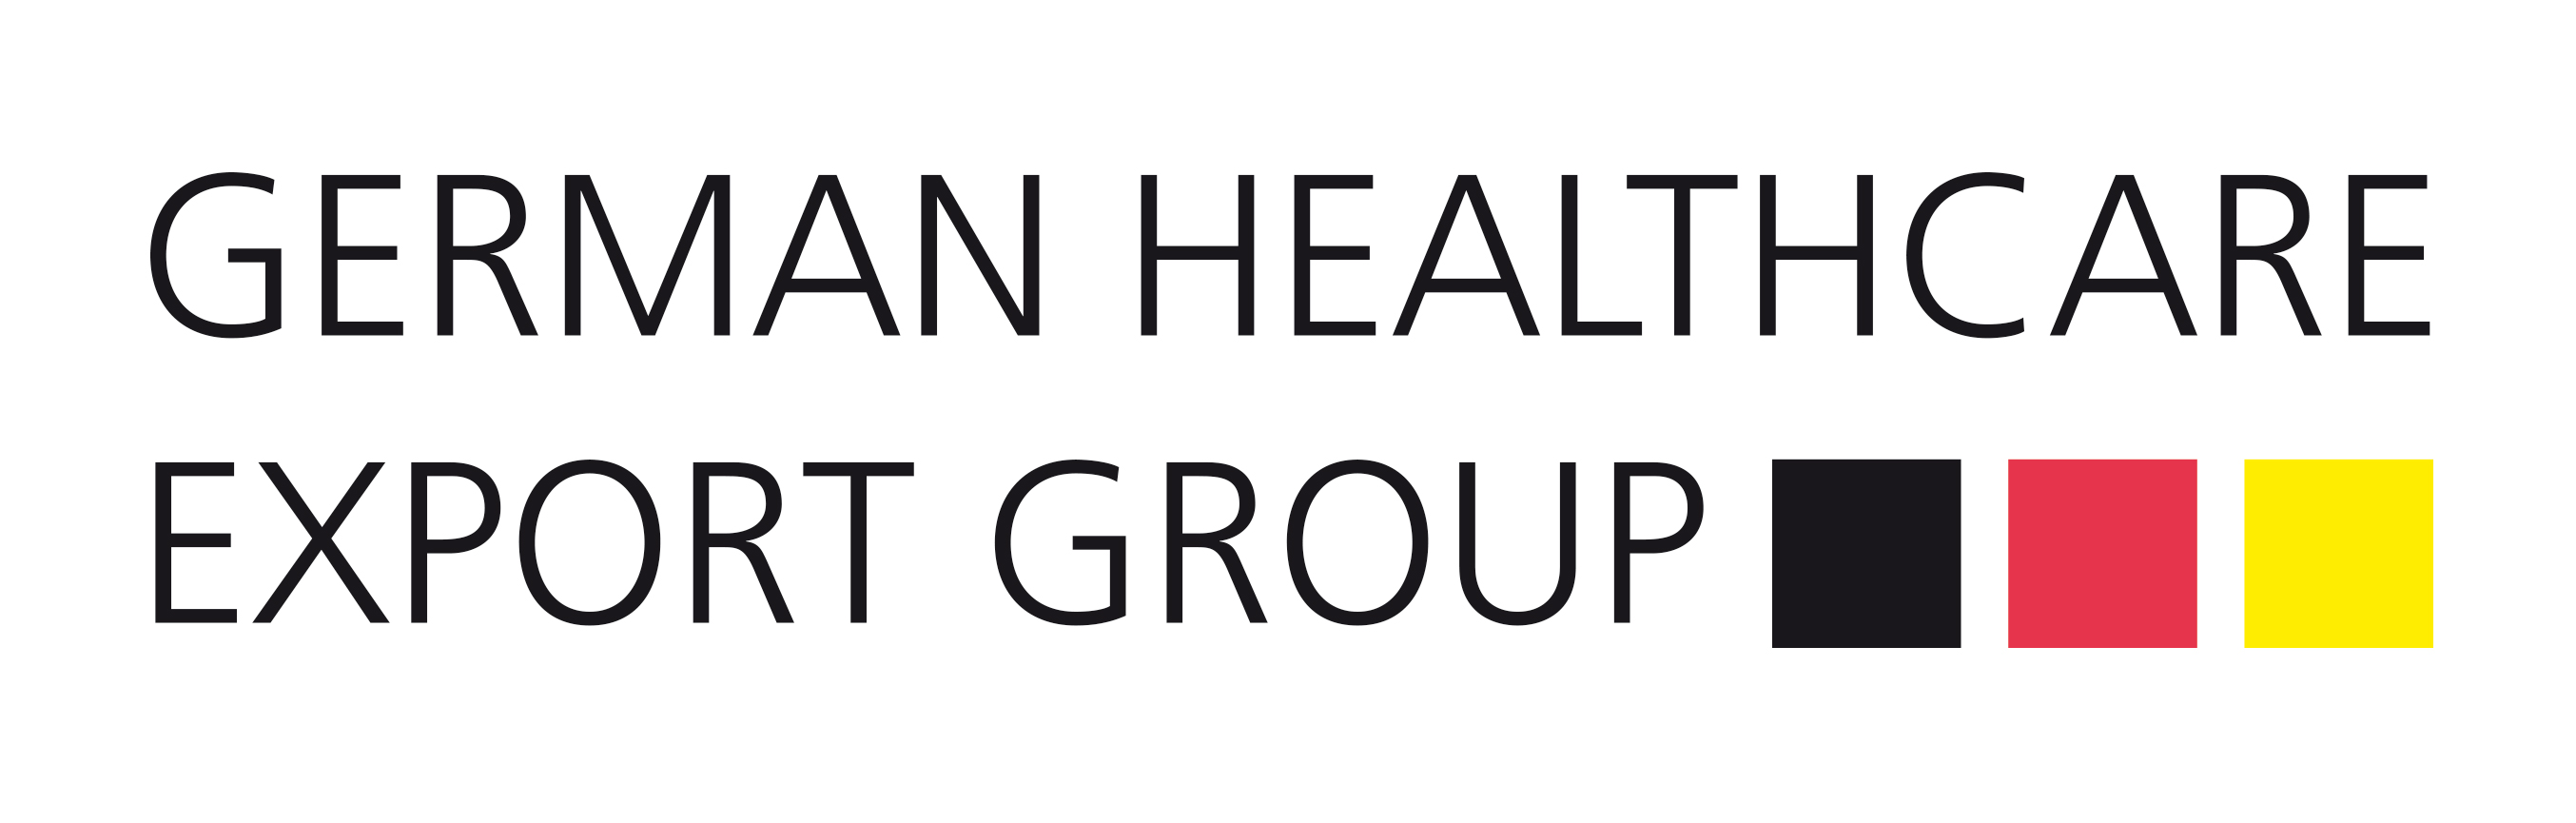 German Healthcare Export Group